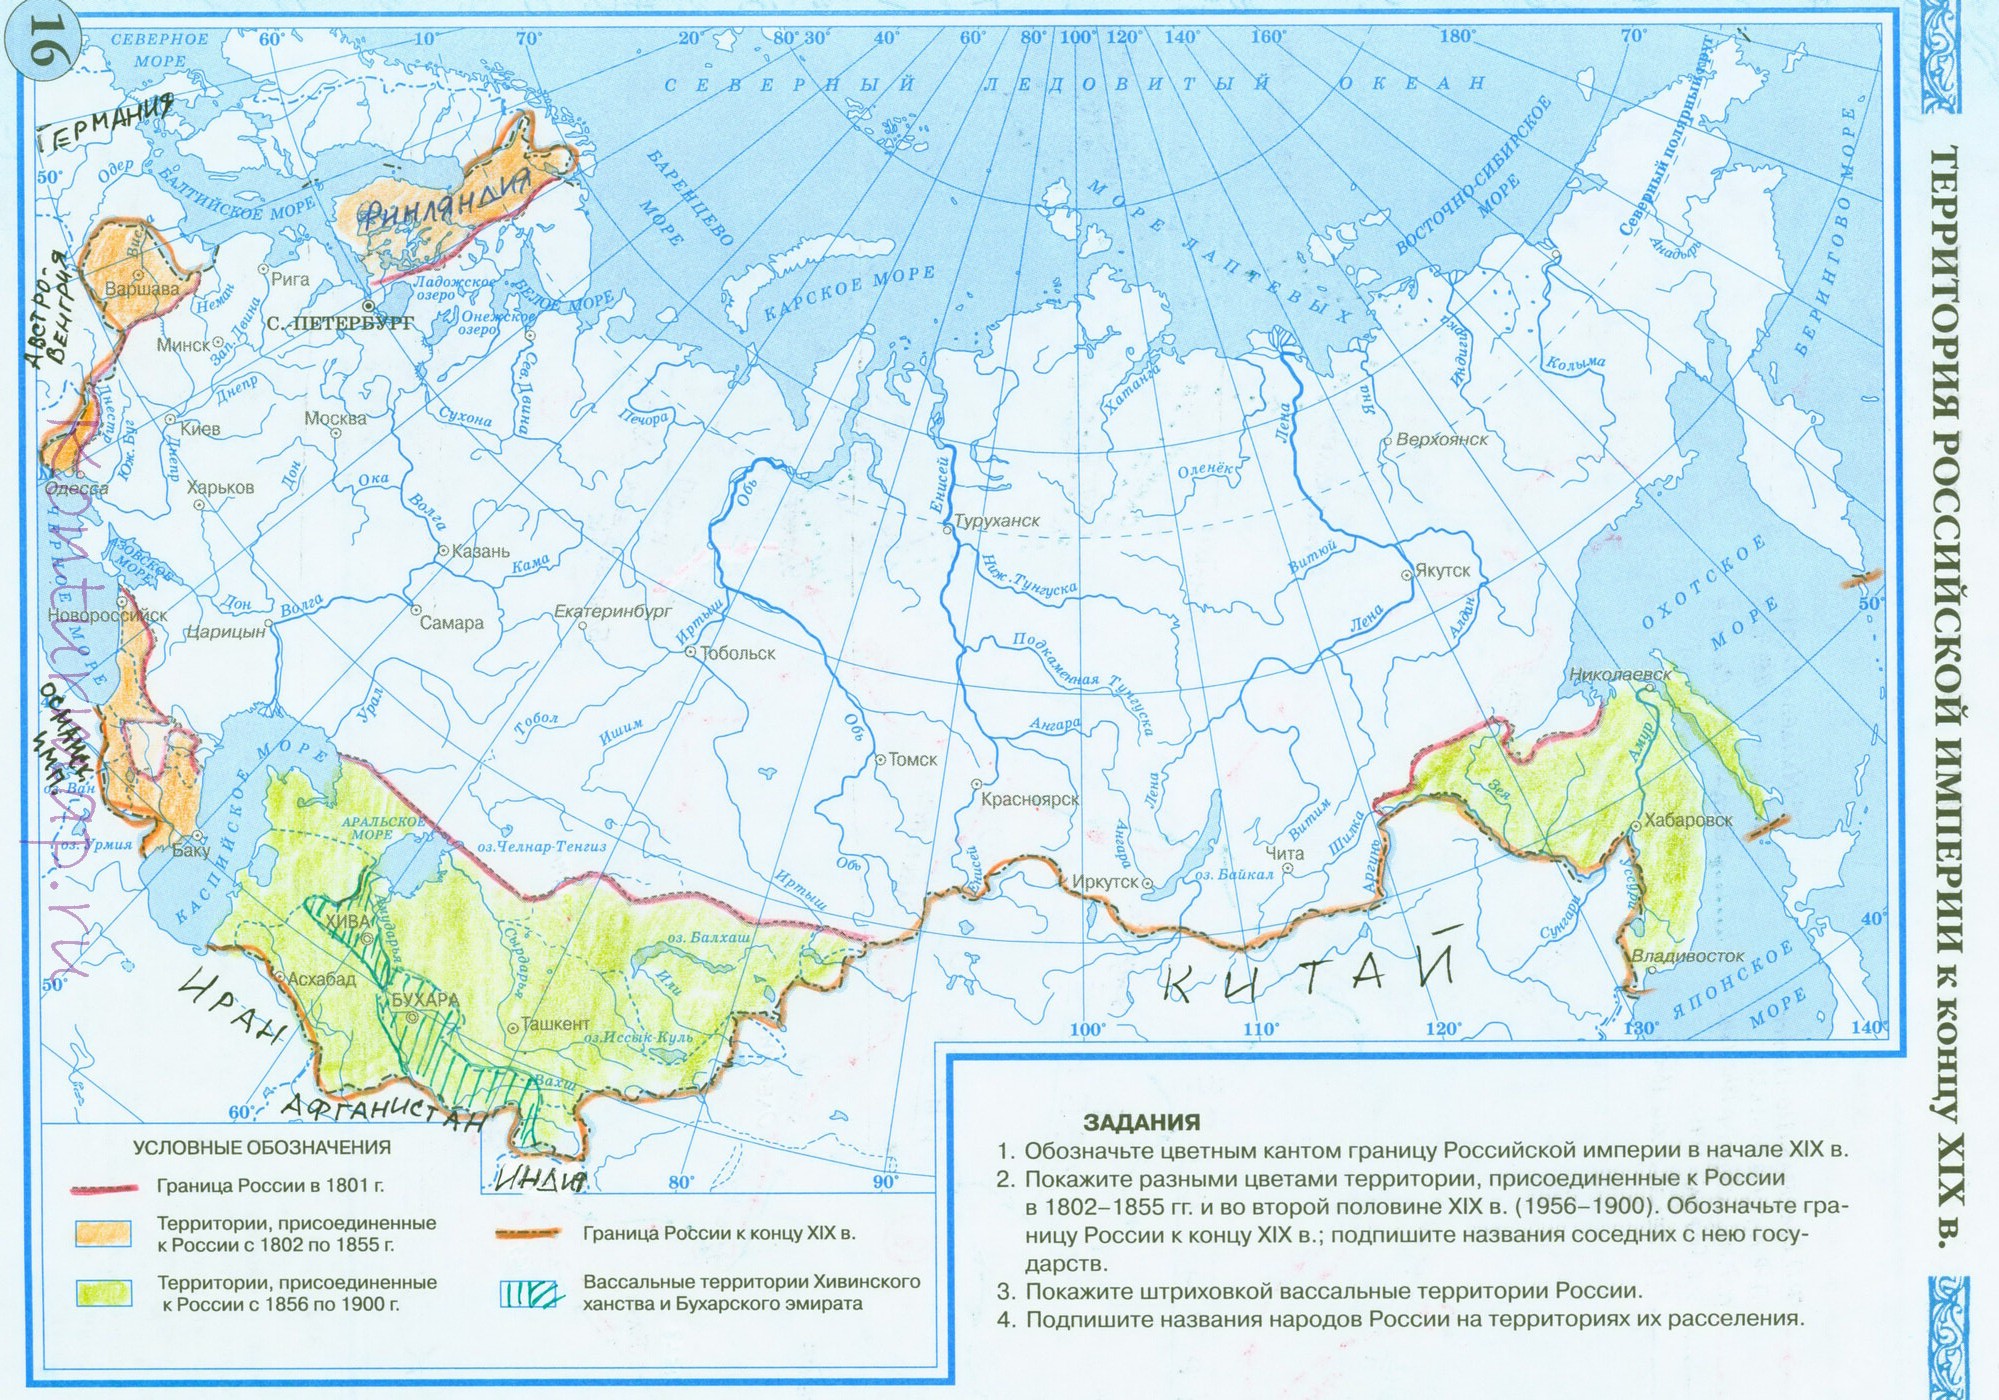 Территория Российской империи к концу 19 века